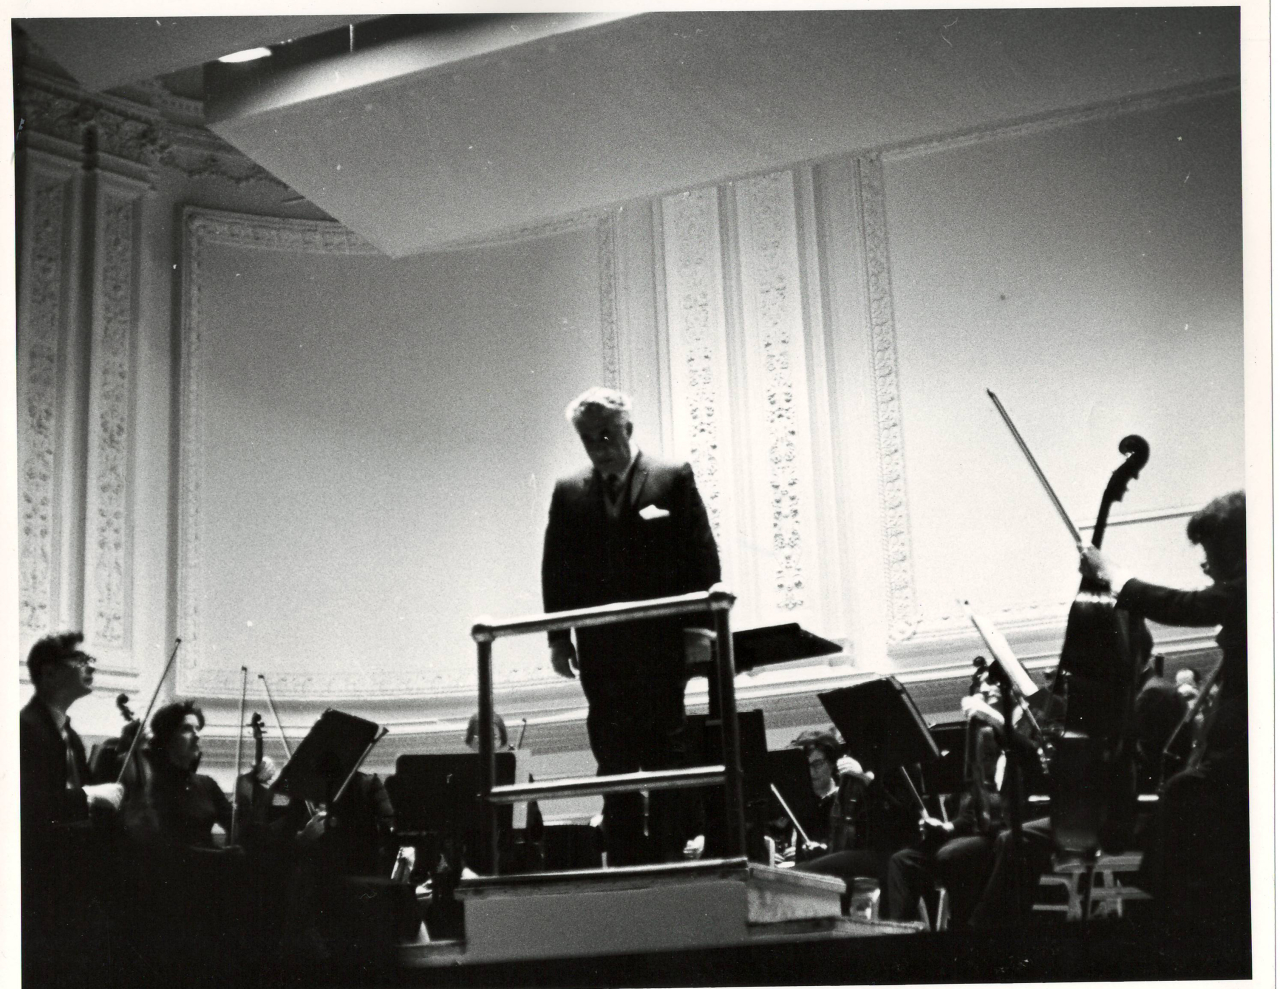 Լուսանկար. Ա. Խաչատրյանը Նյու Յորքի Քարնեգի Հոլ համերգասրահում Ամերիկայի ազգային սիմֆոնիկ նվագախմբի հետ՝ հեղինակային համերգից հետո